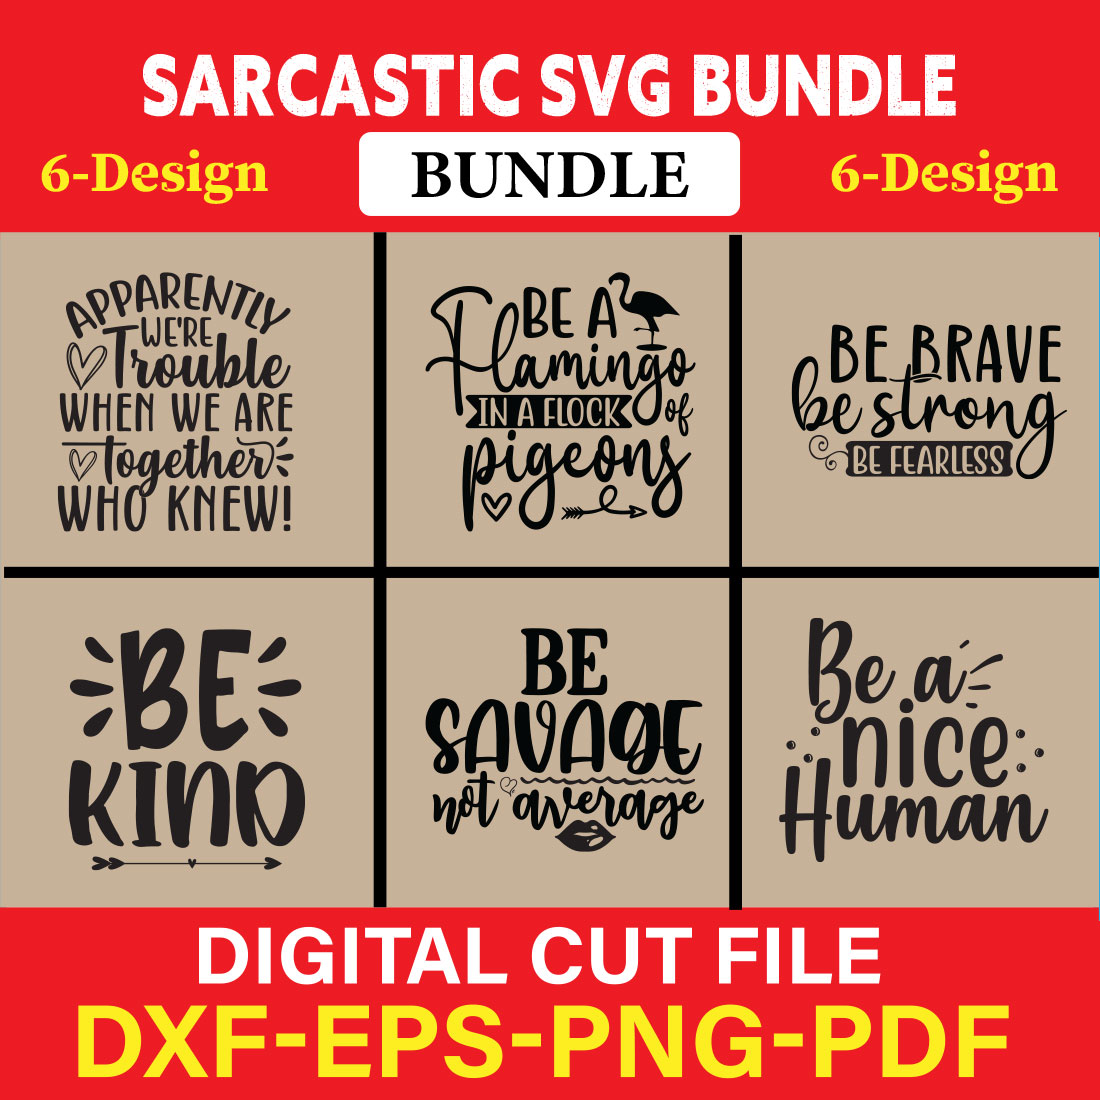 Sarcastic T-shirt Design Bundle Vol-1 cover image.